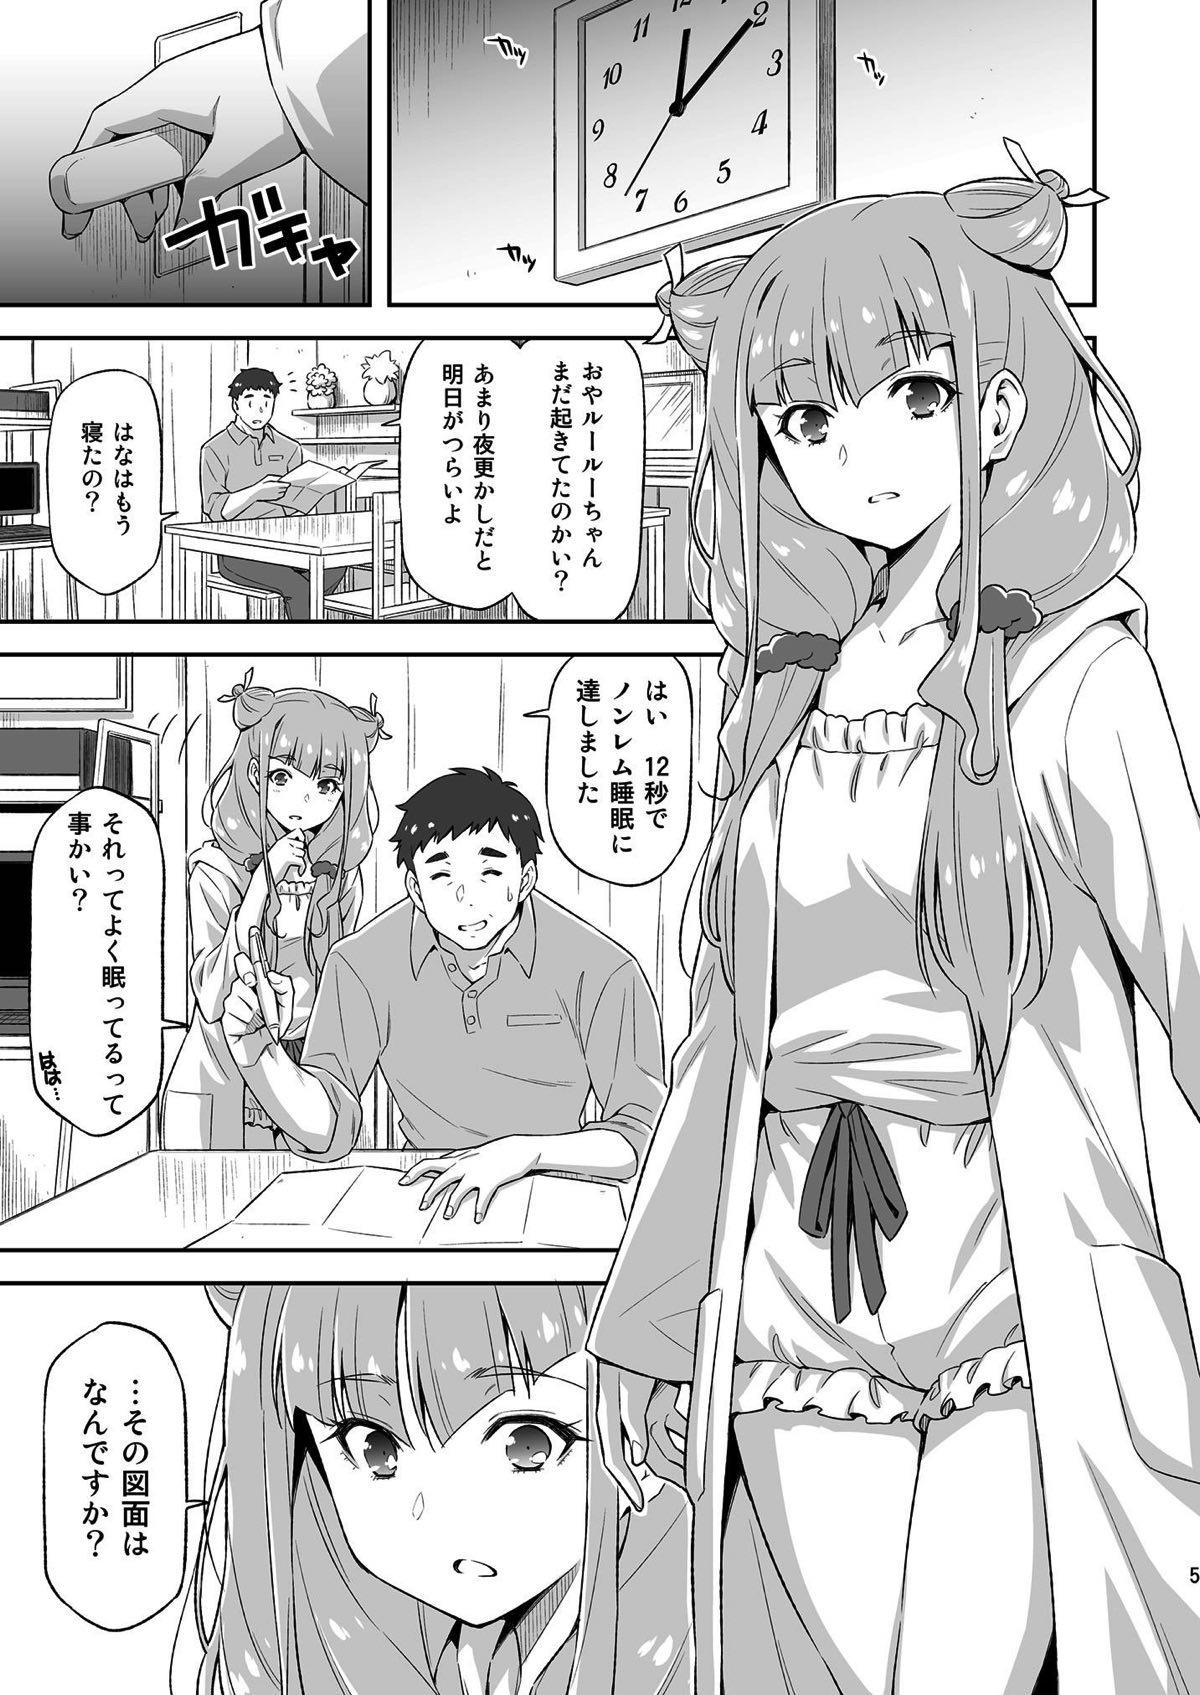 Gorda Ruru ga Yonaka ni Totsuzen Semattekita node. - Hugtto precure Realamateur - Page 4